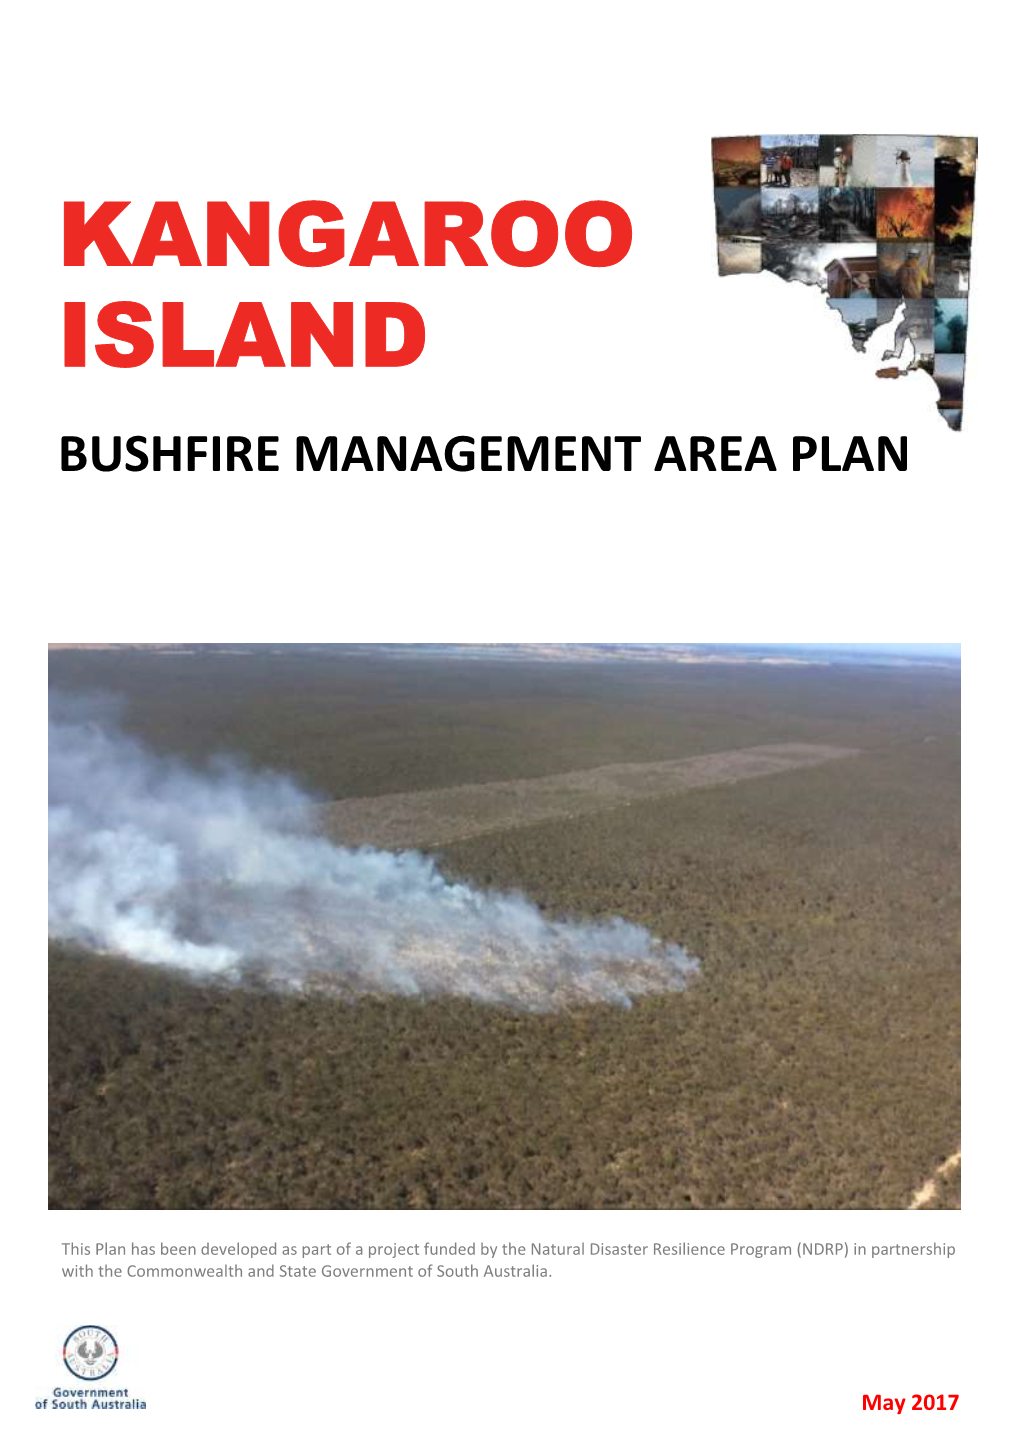 Bushfire Management Area Plan